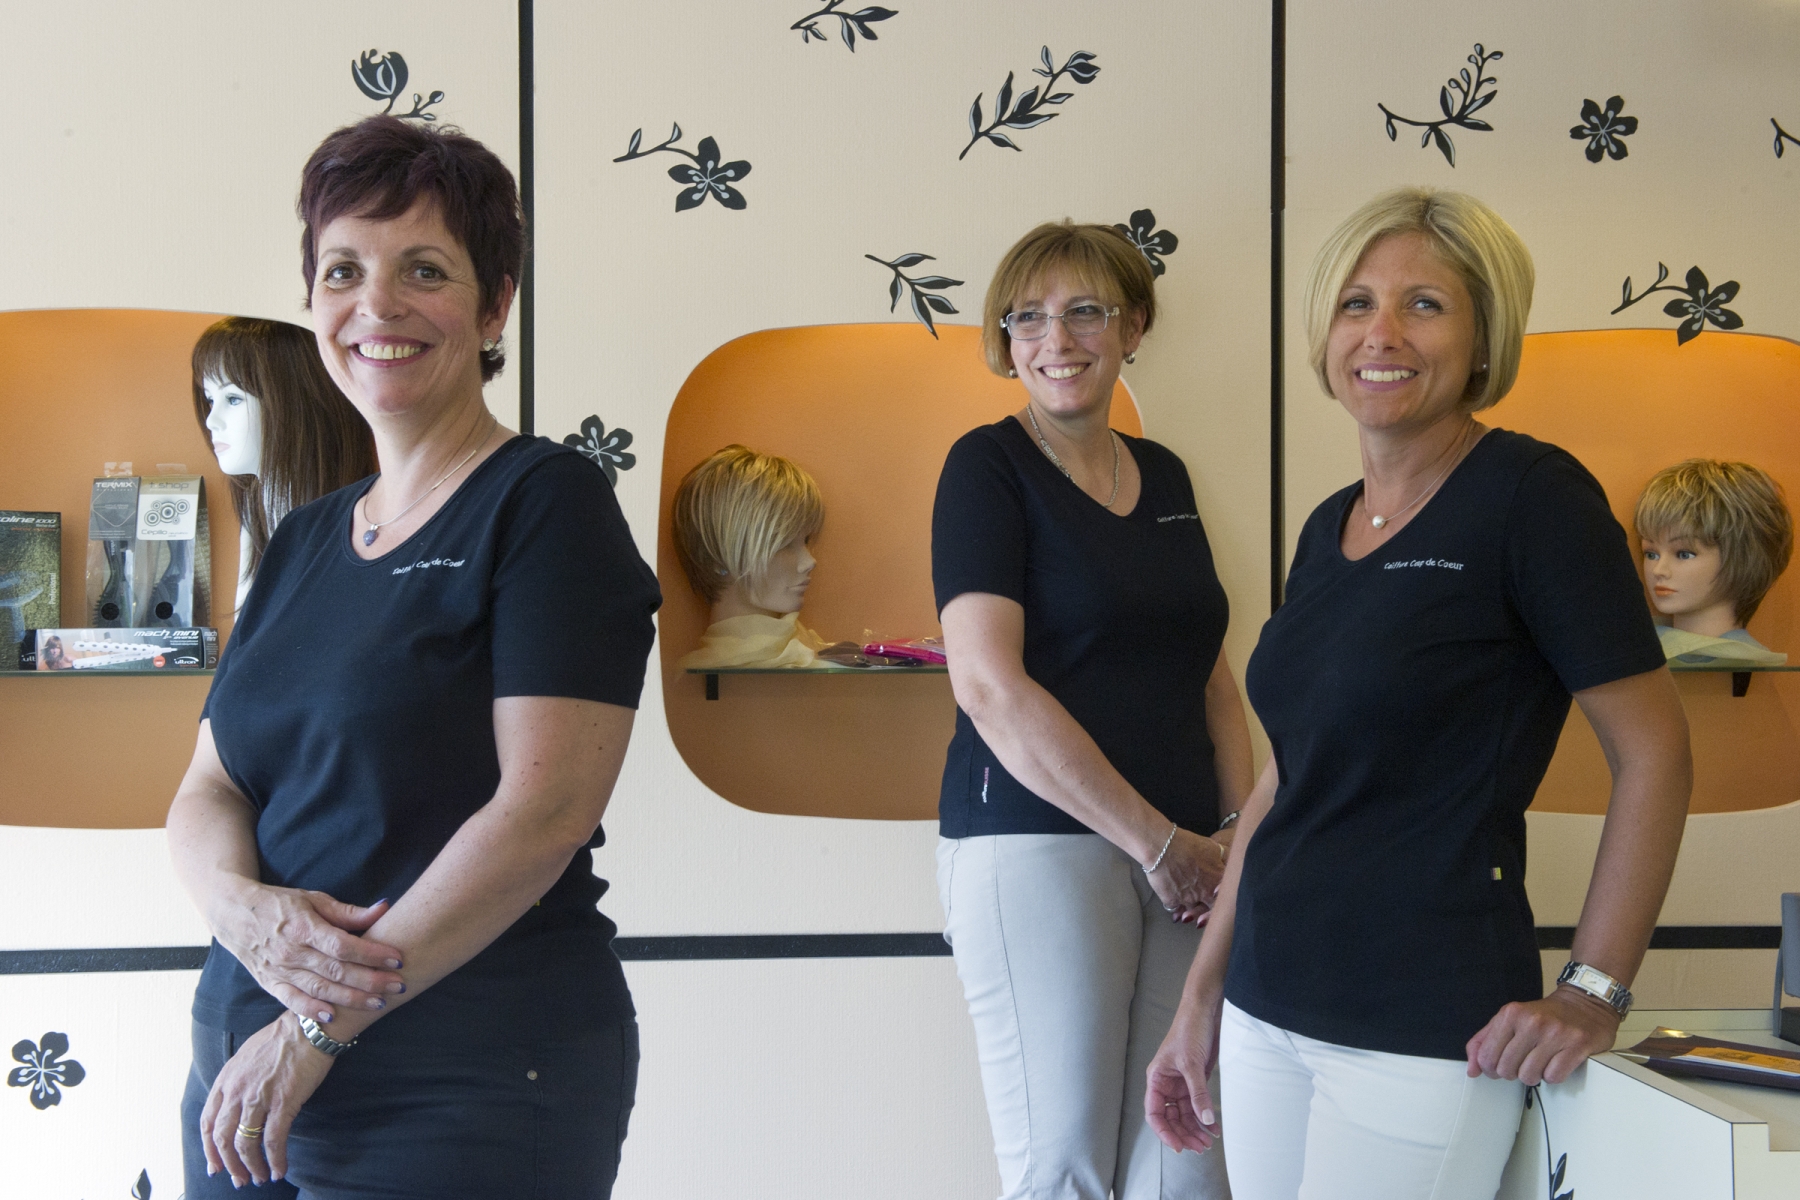 De gauche à droite: Béatrice Genoud, Martine Tardy et Sylvia Pérrez. Elles proposent des perruques pour les femmes qui ont perdu leur cheveux notamment suite à une maladie.